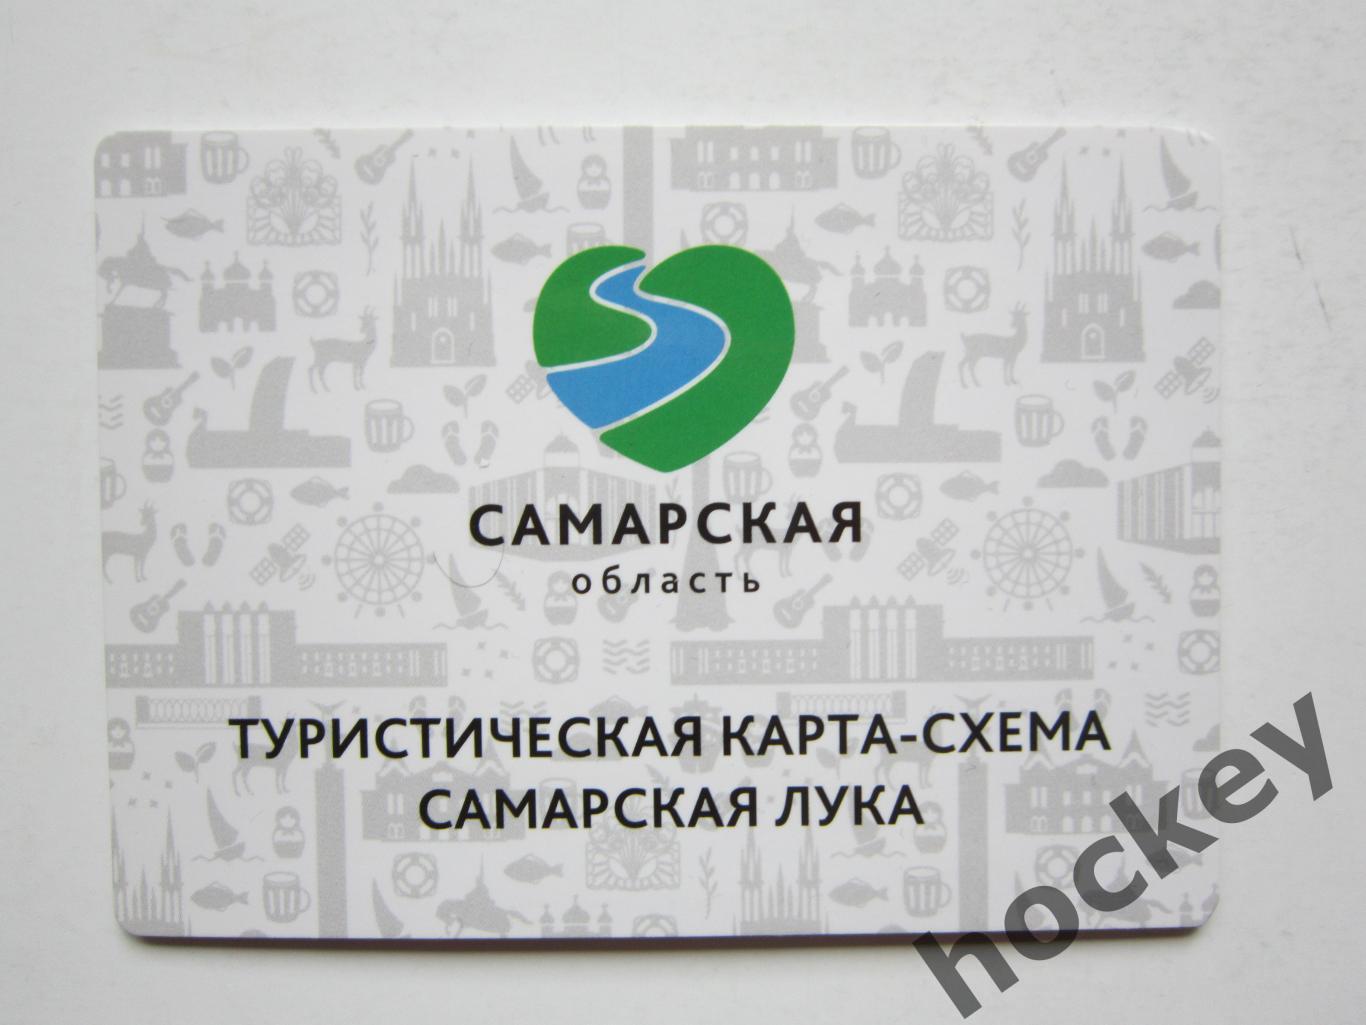 Самарская область. Туристическая карта-схема